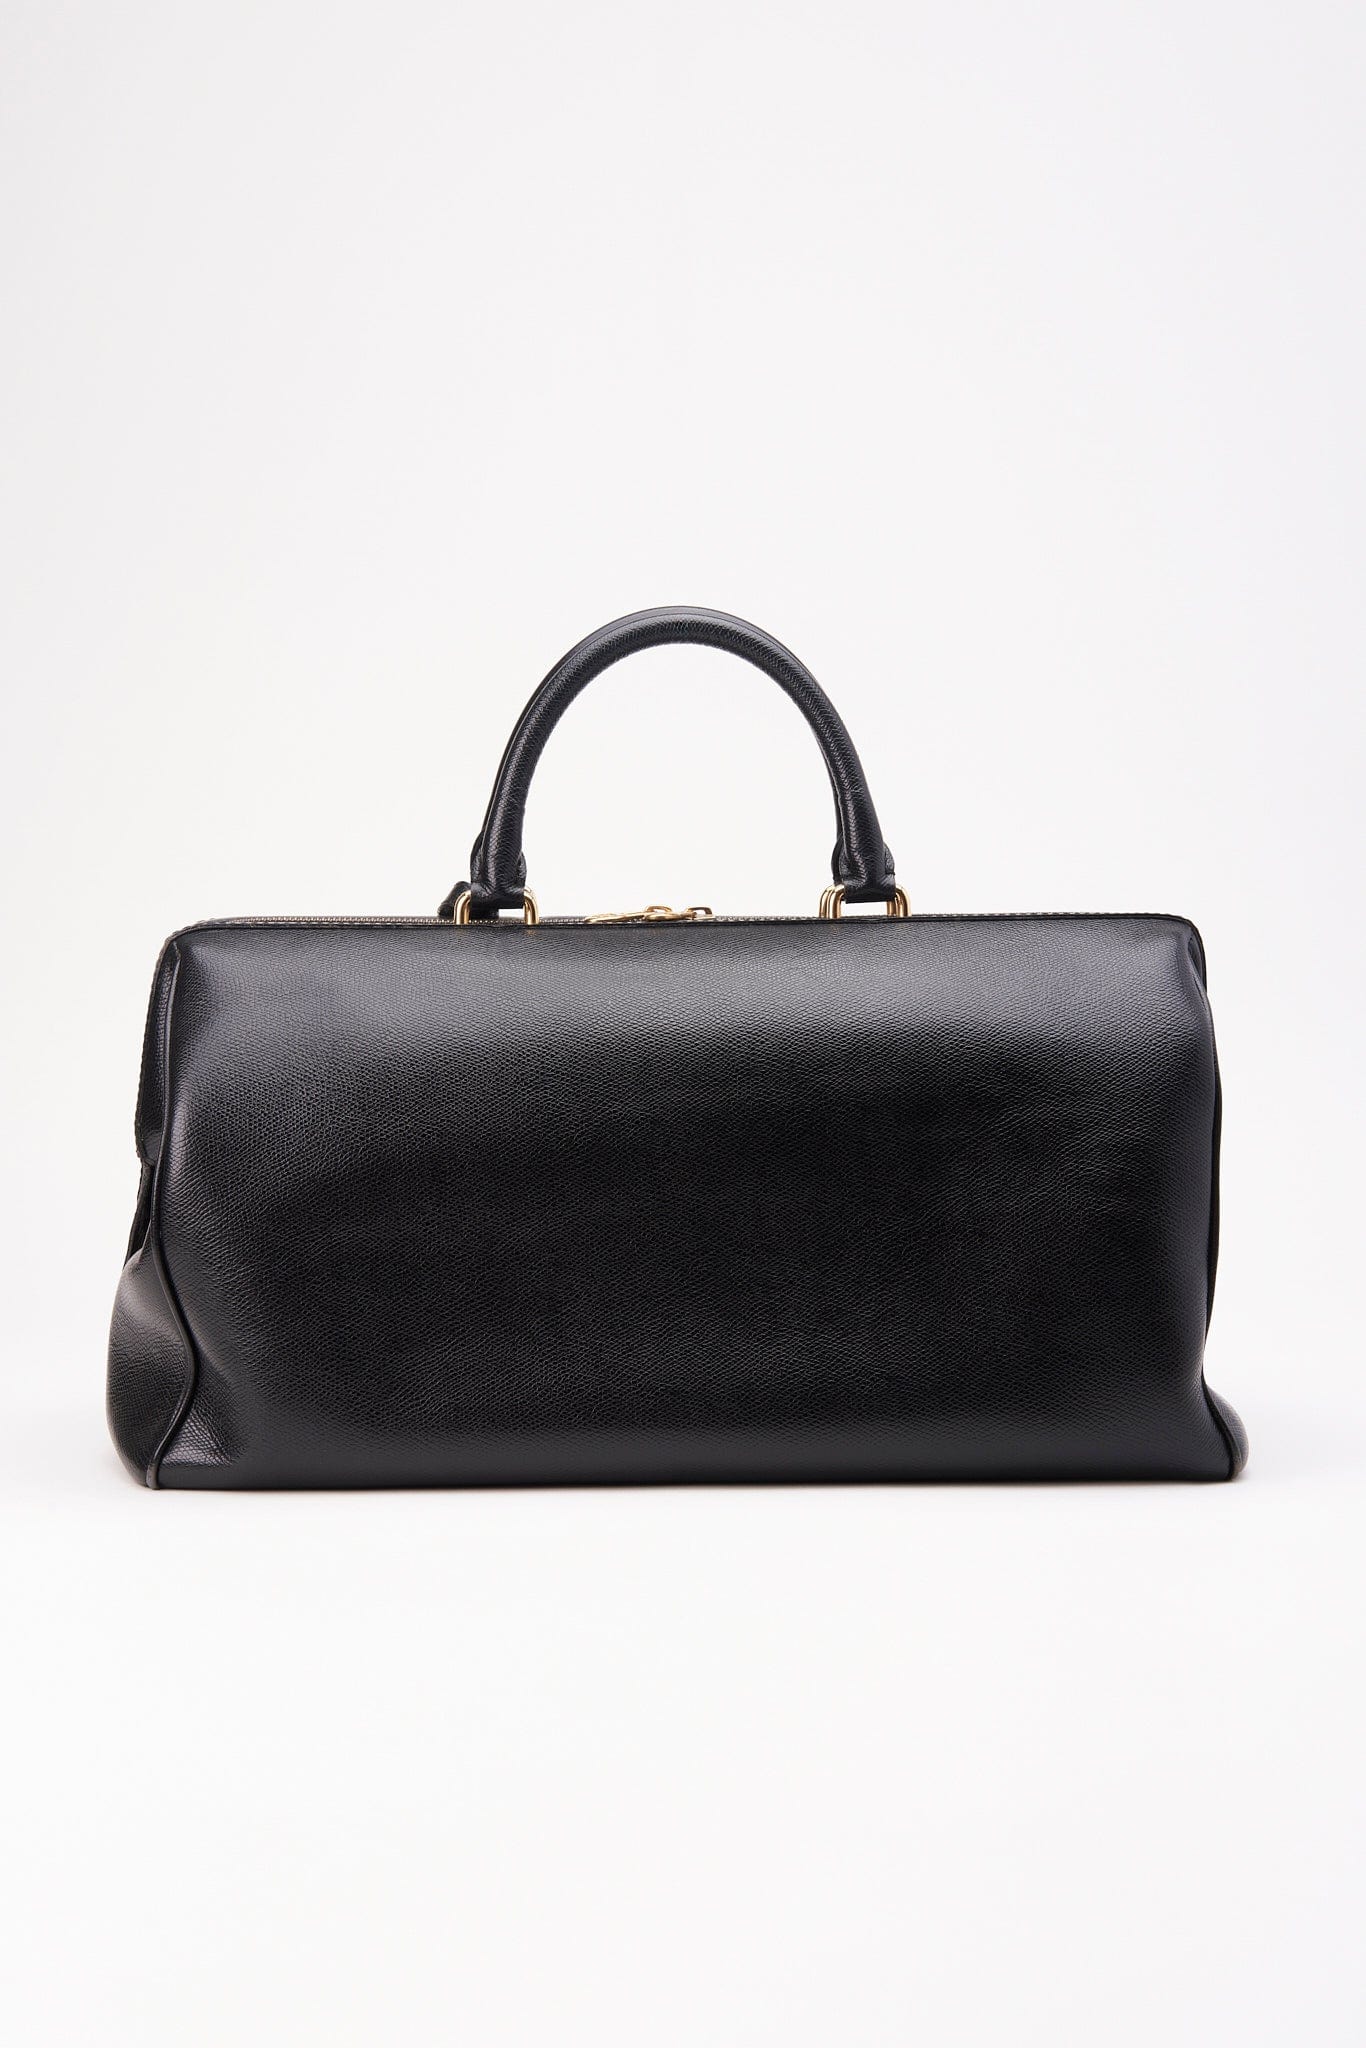 Vintage Celine Black Leather Doctors Bag